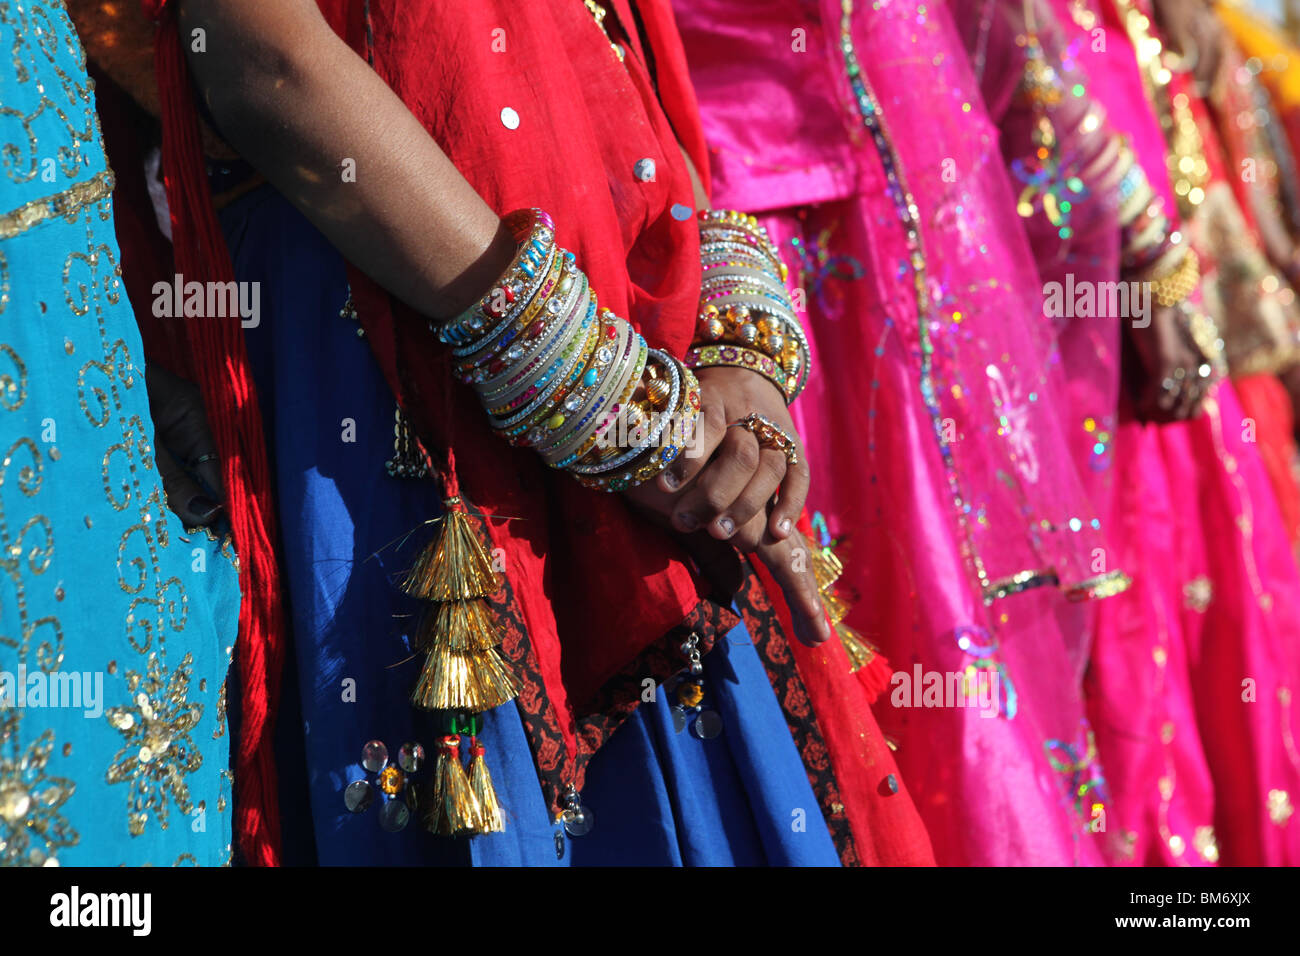 Junge indische Frauen konkurrieren um die besten gekleidet auf der 2009 bekleidete Marwar Festival im Stadion in Jodhpur, Rajasthan, Indien. Stockfoto